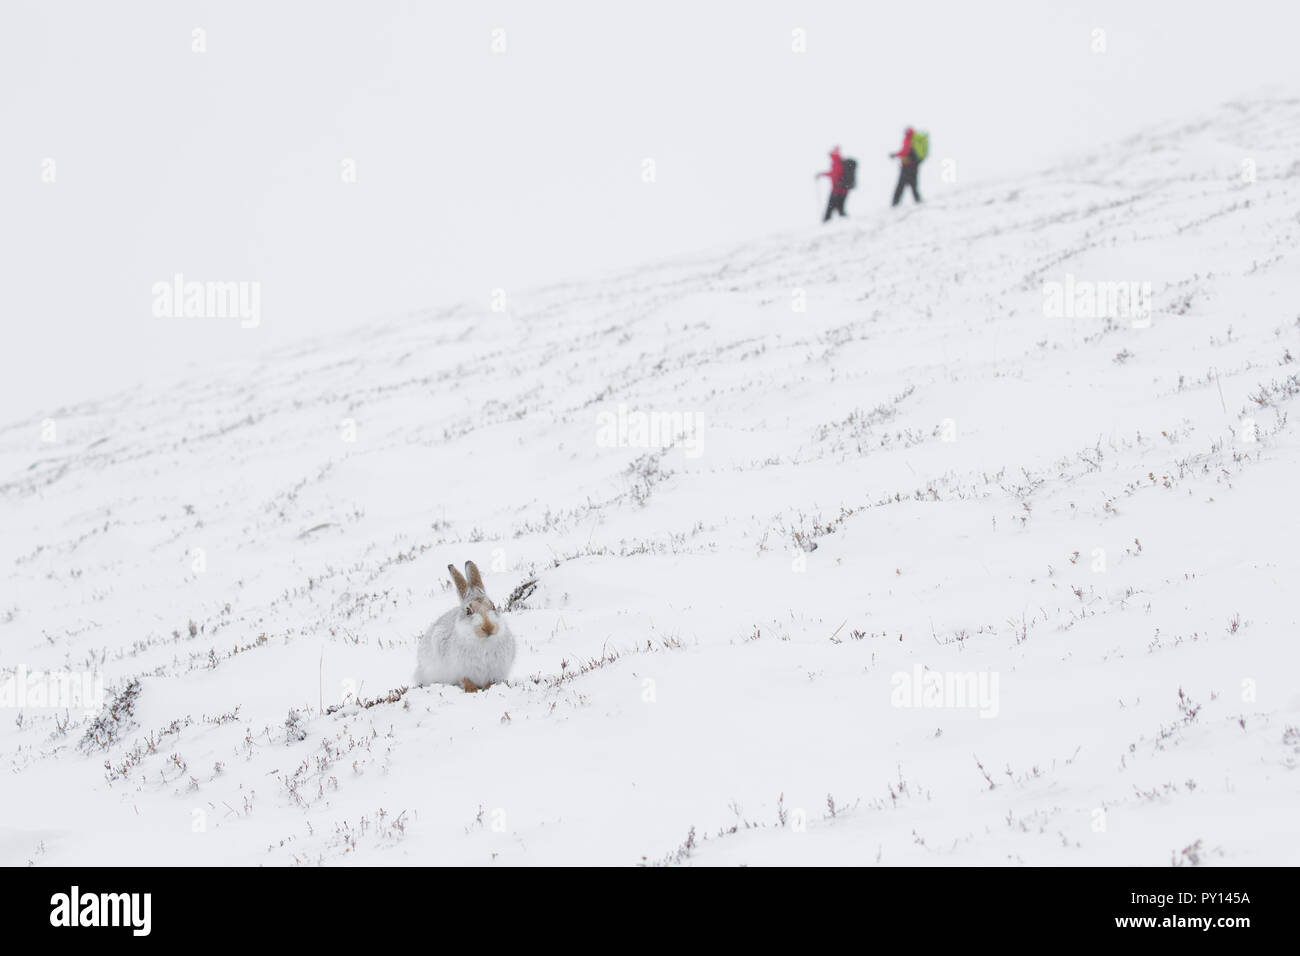 La lepre bianca / lepre alpina / neve lepre (Lepus timidus) in bianco inverno pelage e delle escursioni nel Parco Nazionale di Cairngorms, Scotland, Regno Unito Foto Stock